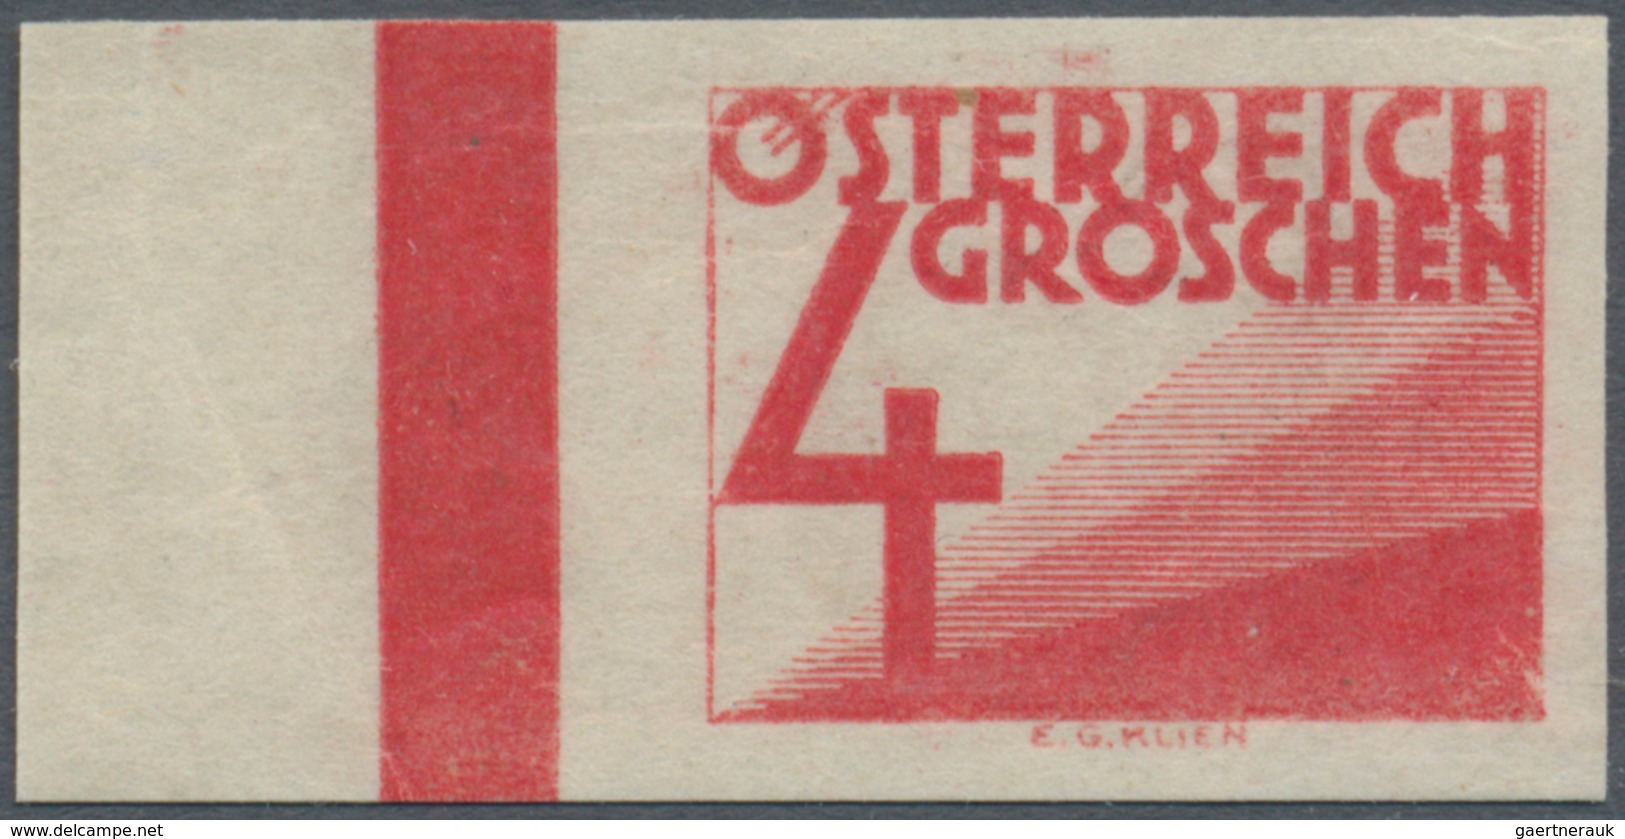 Österreich - Portomarken: 1925, Ziffern 1 Gr. bis 10 Sch. UNGEZÄHNT, alle 22 bekannten Werte komplet